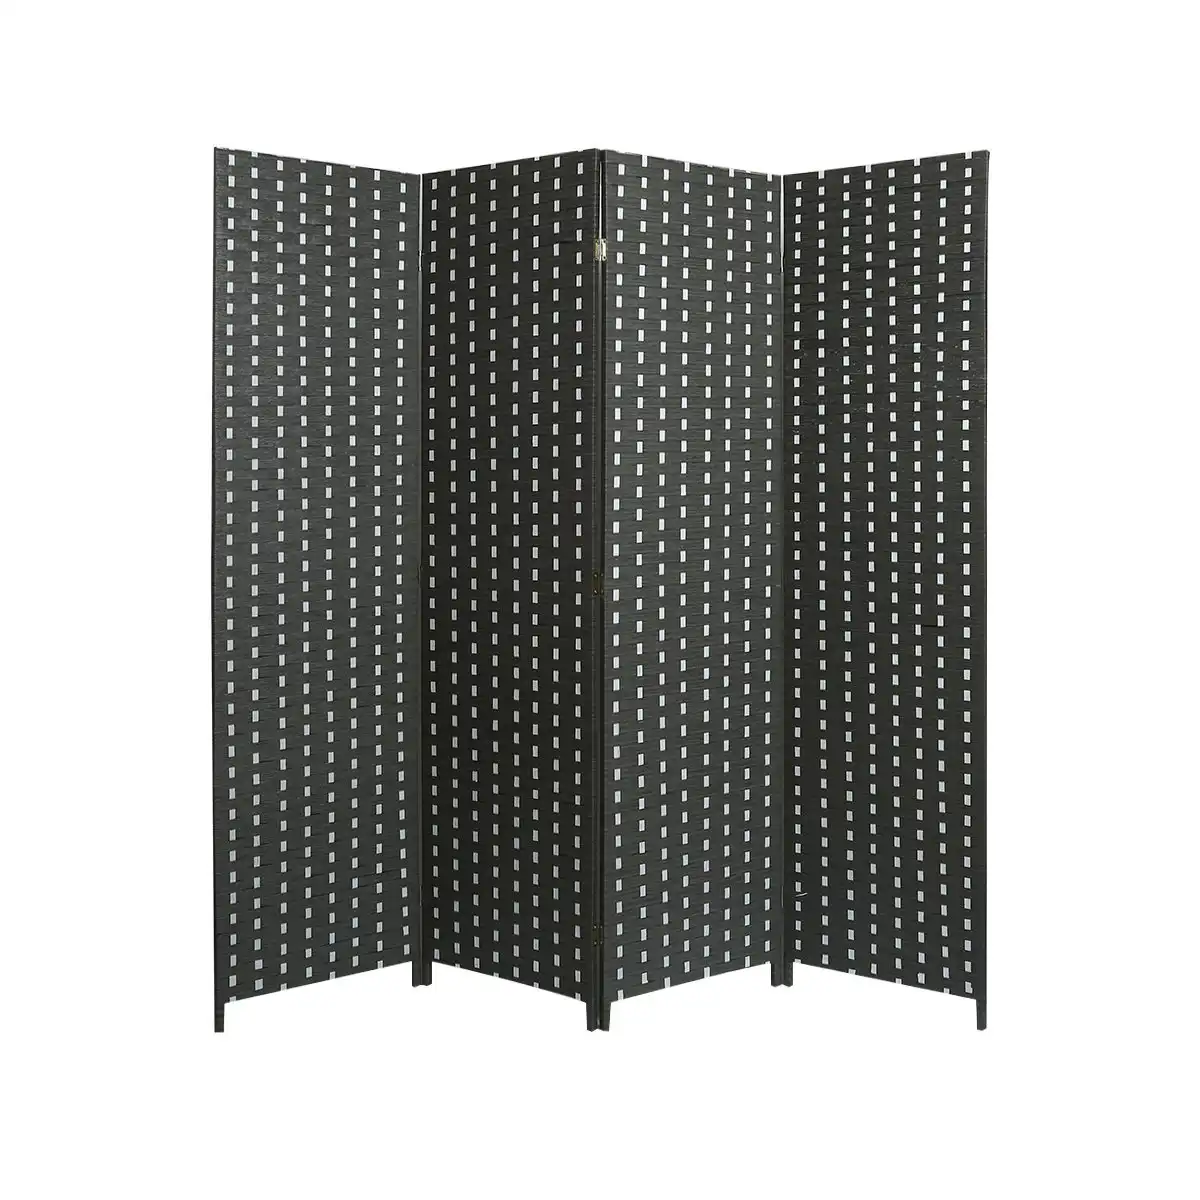 Longtu 4-Panel Raumteiler im japanischen orientalischen Stil Schwarze Farbe